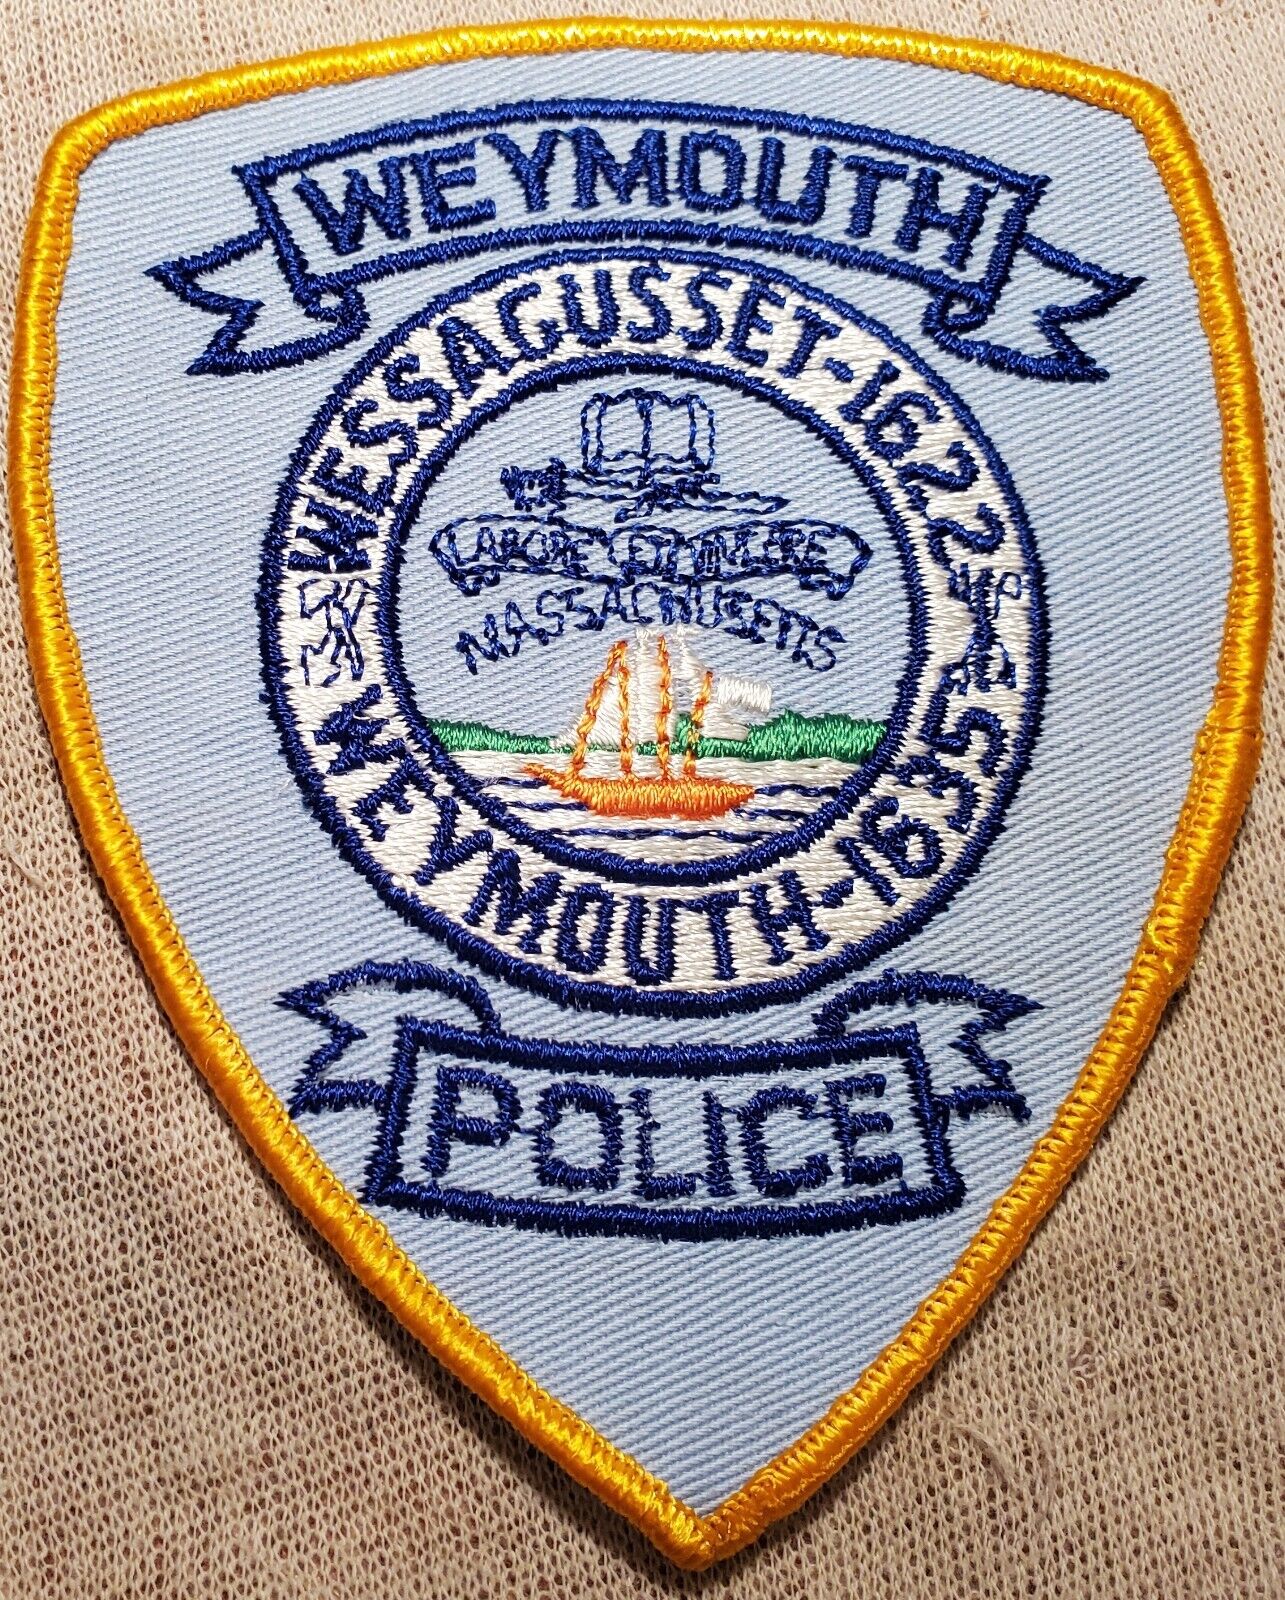 MA Weymouth Massachusetts Police Patch